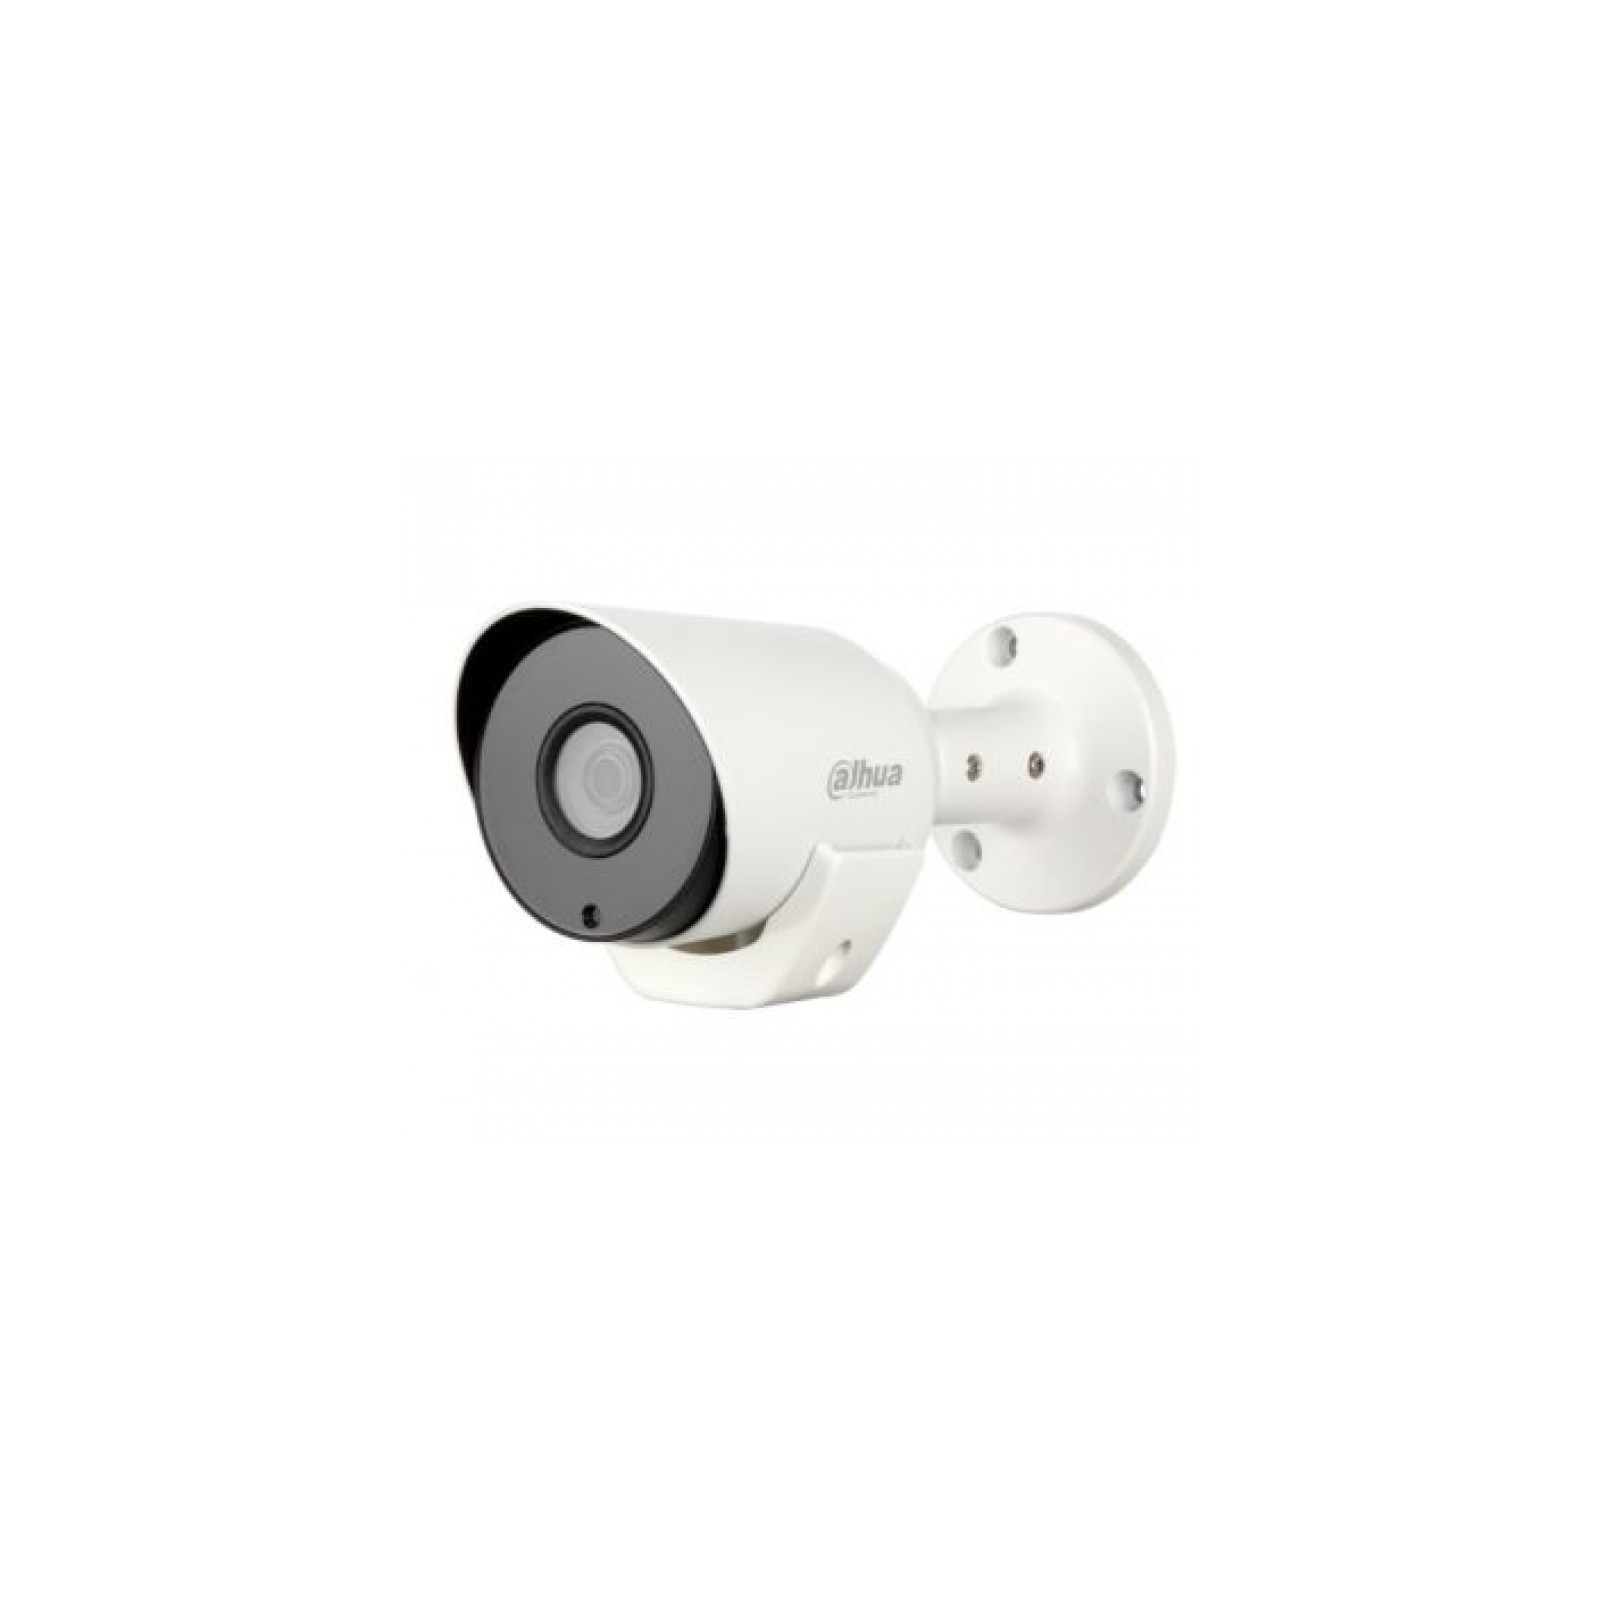 Камера видеонаблюдения Dahua DH-HAC-LC1220TP-TH (2.8)